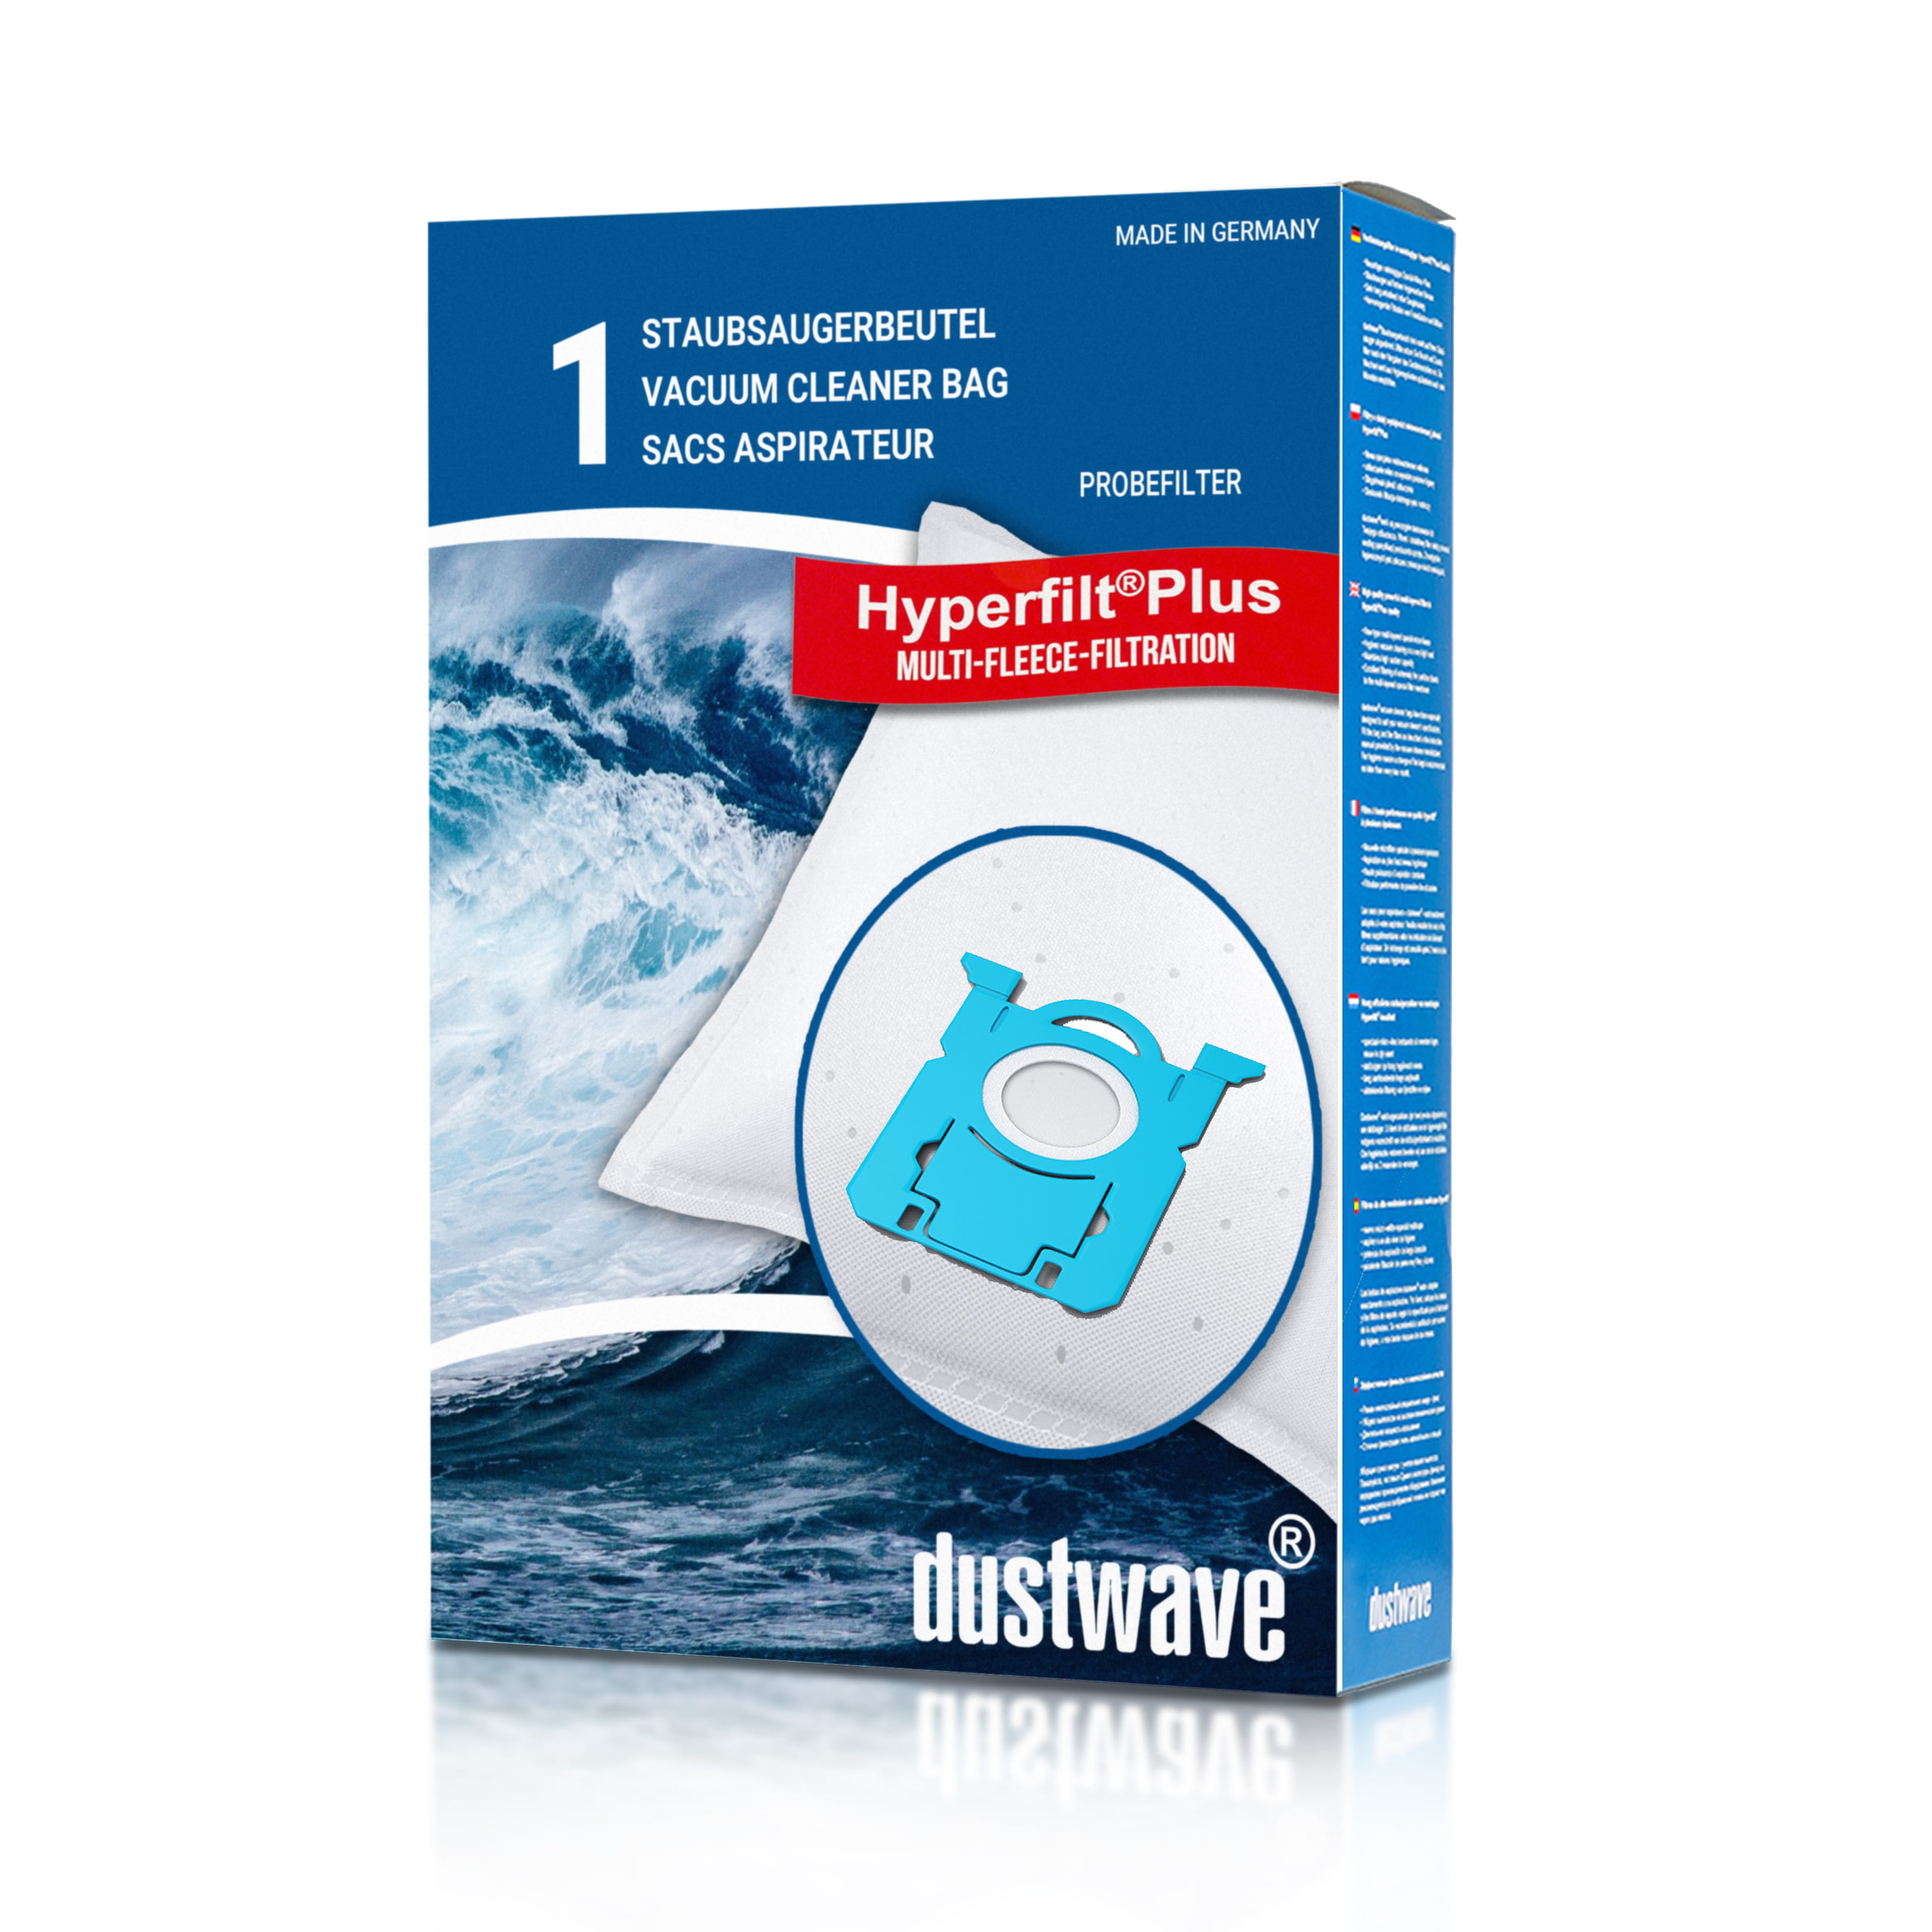 Dustwave® 1 Staubsaugerbeutel für AEG APF6110 / Powerforce 77 - hocheffizient mit Hygieneverschluss - Made in Germany